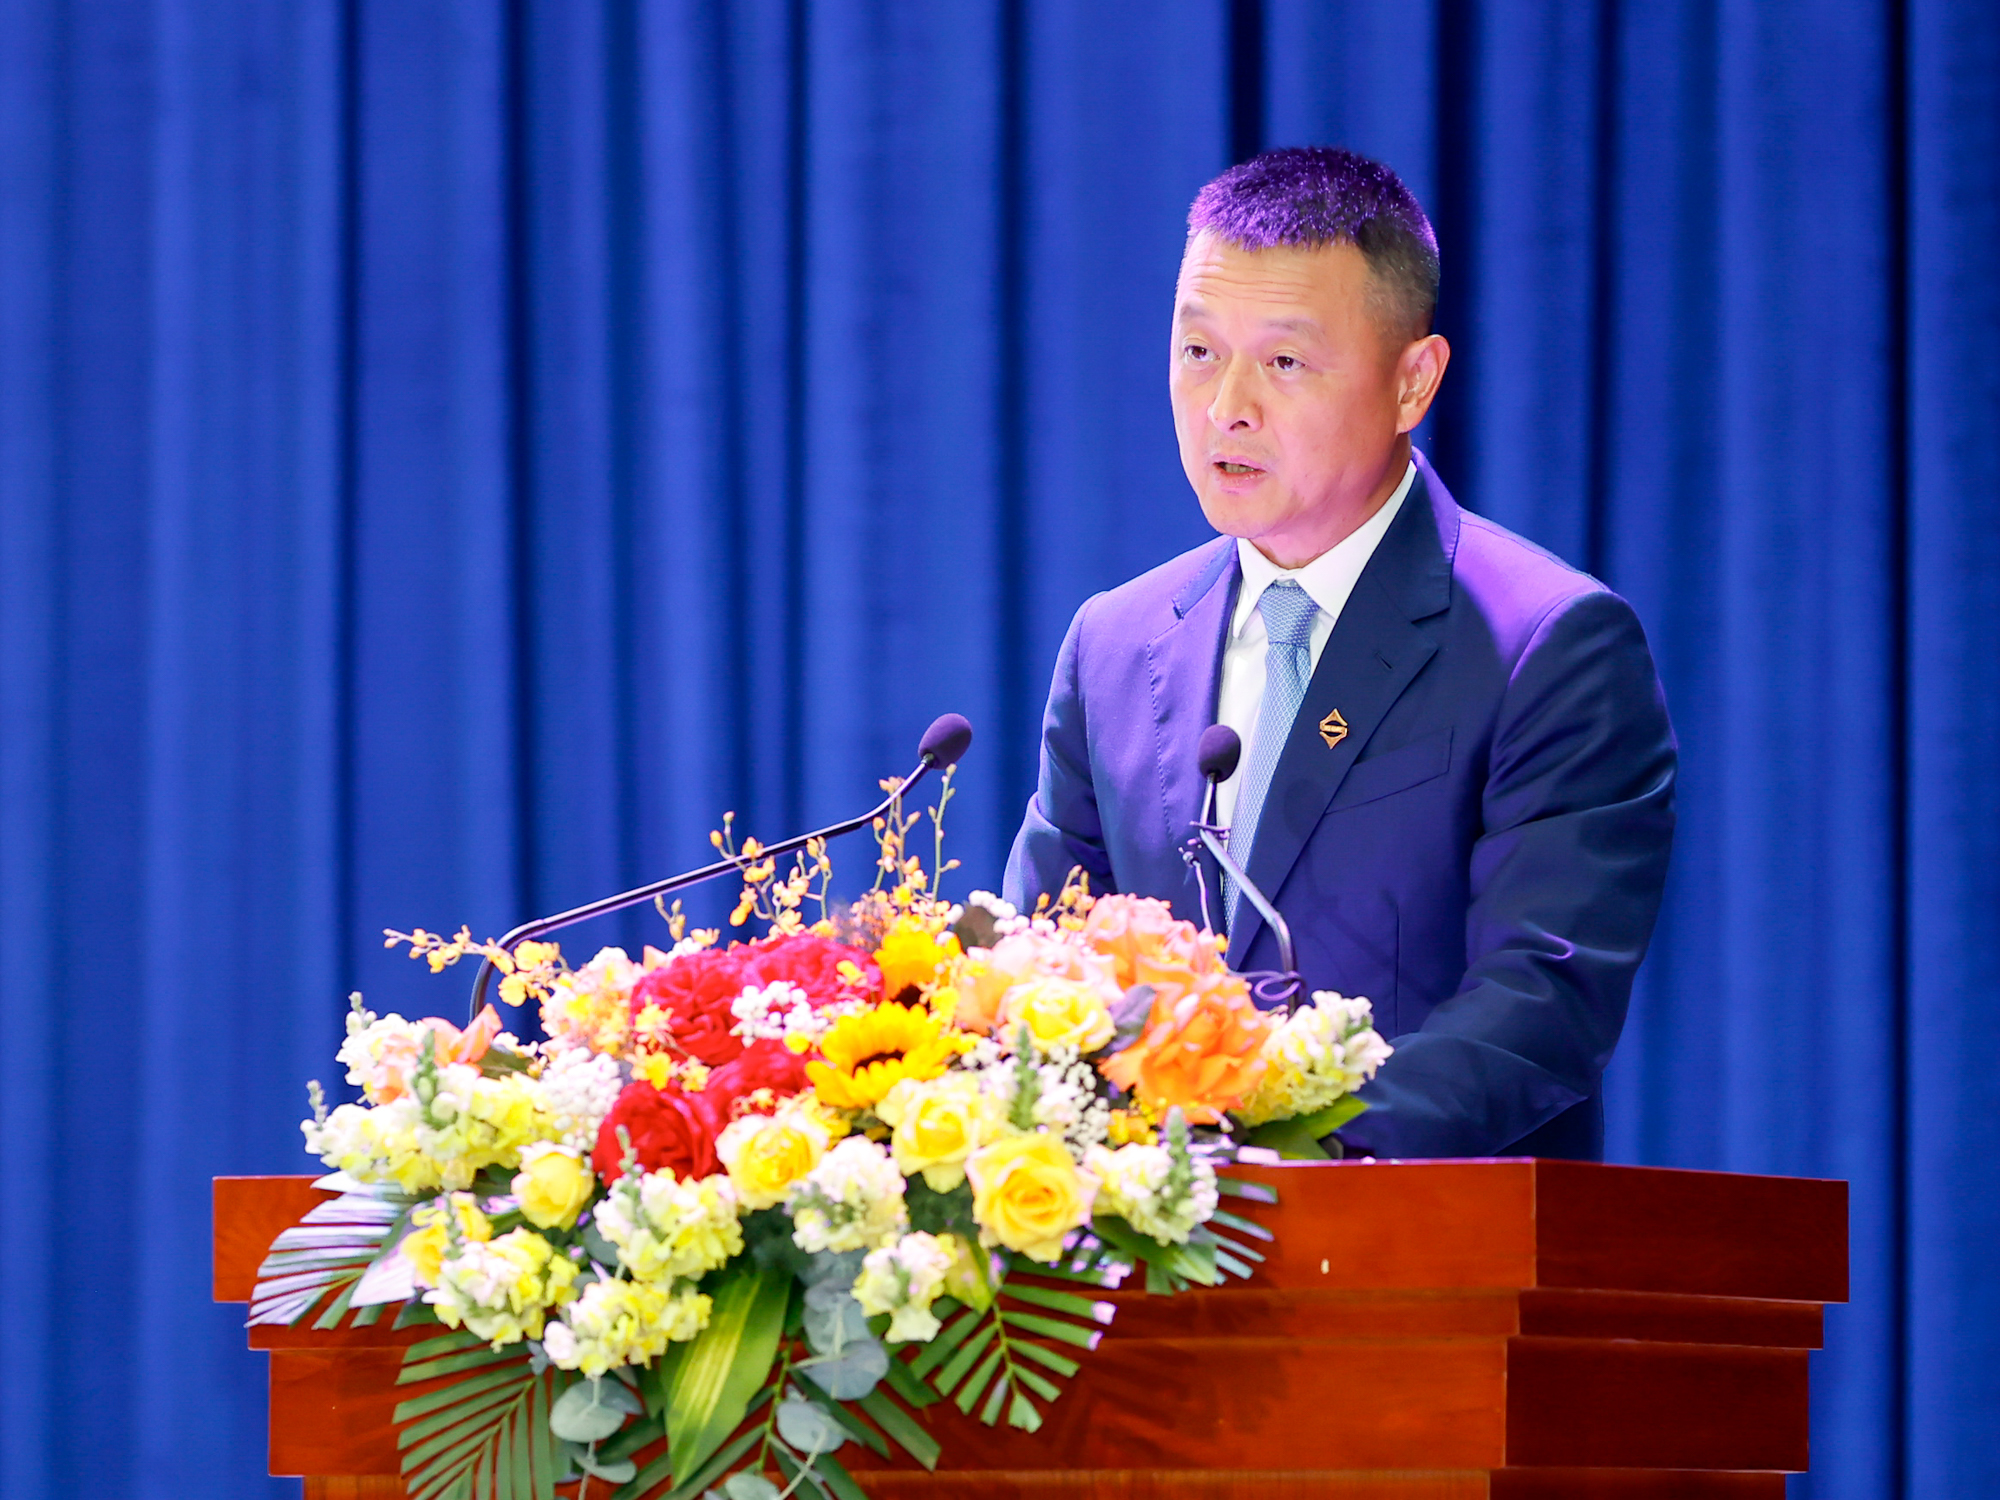 Chủ tịch Tập đoàn Sungroup Trần Minh Trưởng, đại diện doanh nghiệp đầu tư có hiệu quả ở tỉnh Tây Ninh phát biểu tại hội nghị - Ảnh: VGP/Nhật Bắc